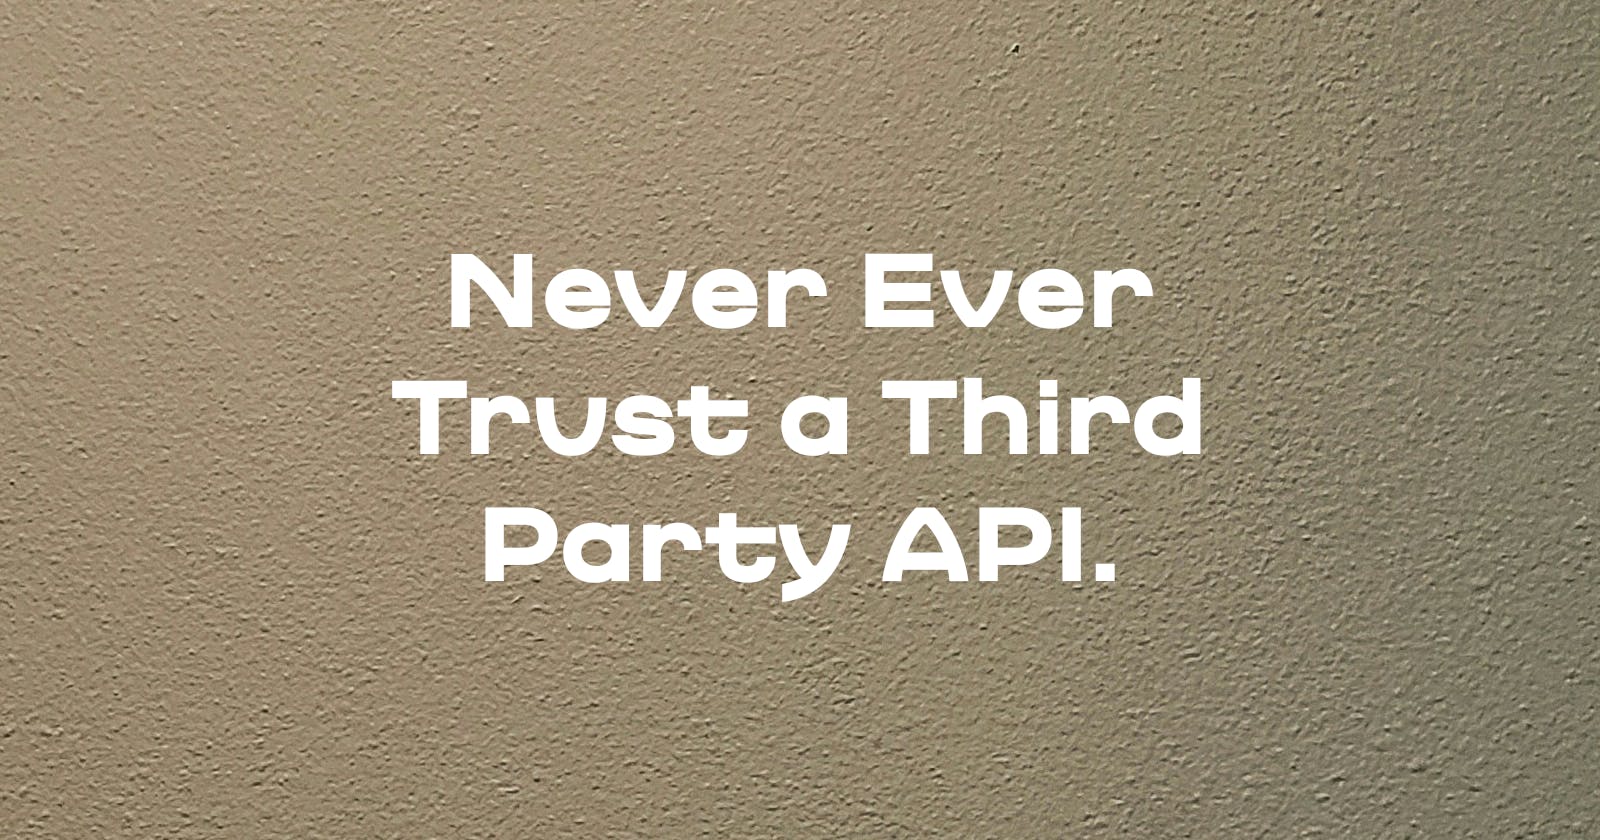 Never ever trust a third-party API.